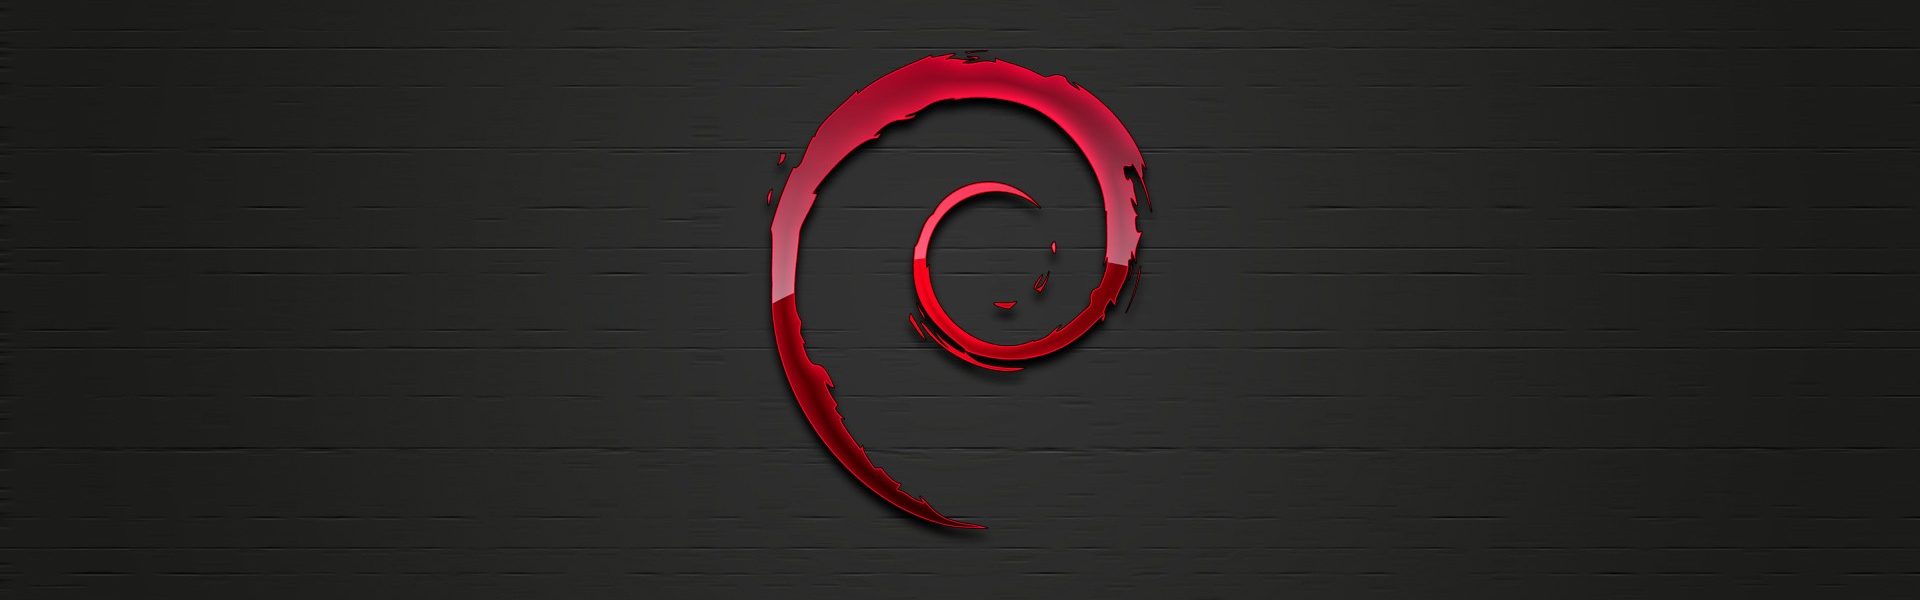 Distribuidor Debian 11.1.0 Bullseye